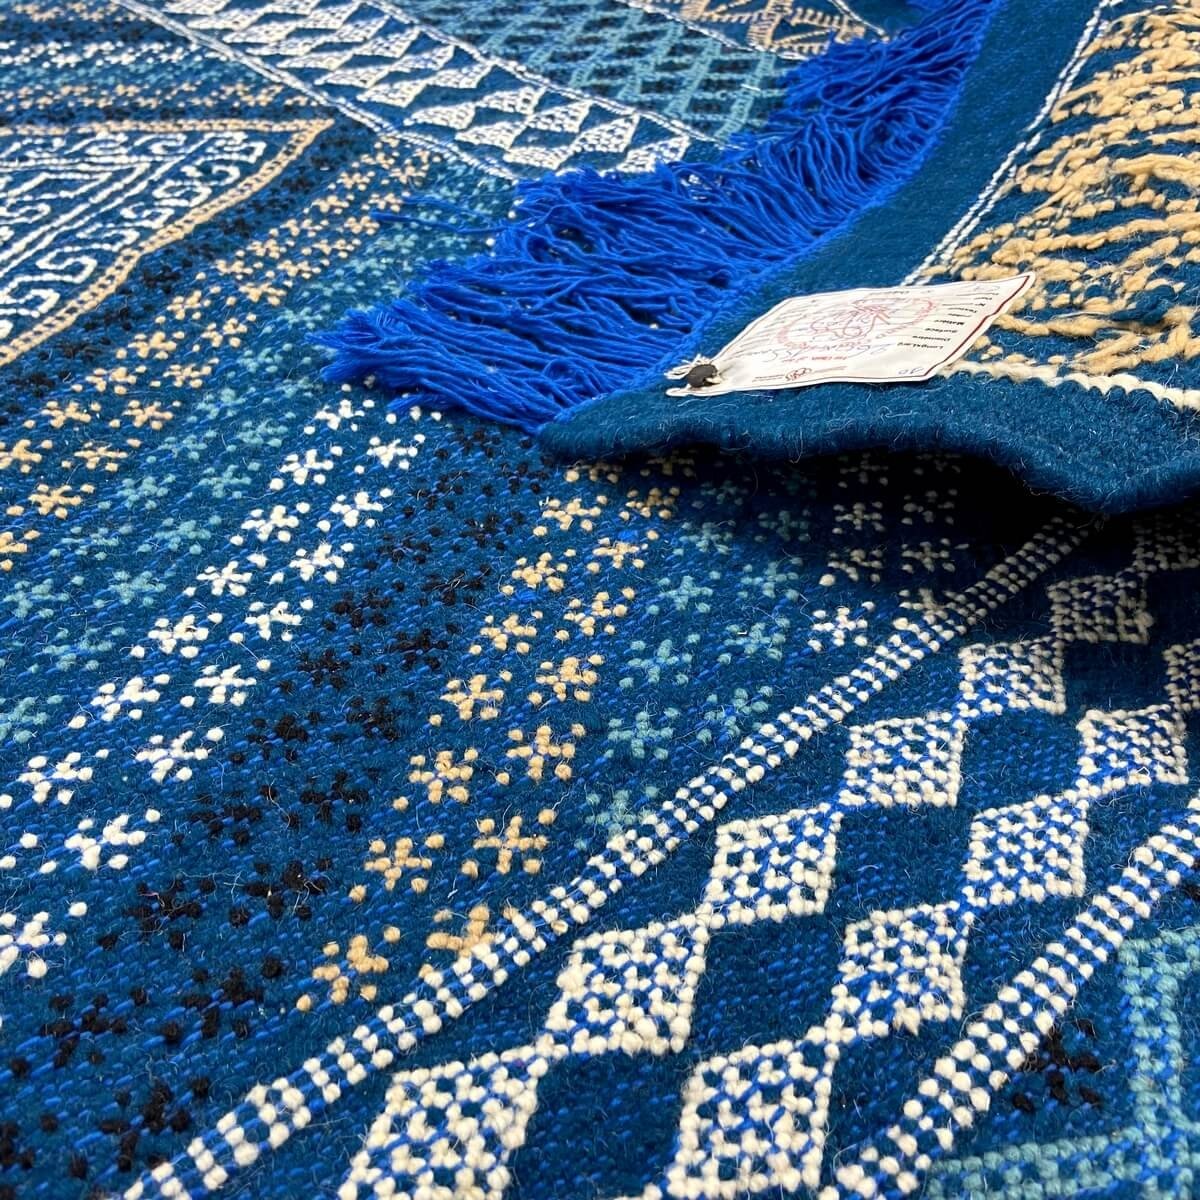 tappeto berbero Tappeto Margoum Nidhal 120x180 Blu/Bianco (Fatto a mano, Lana, Tunisia) Tappeto margoum tunisino della città di 